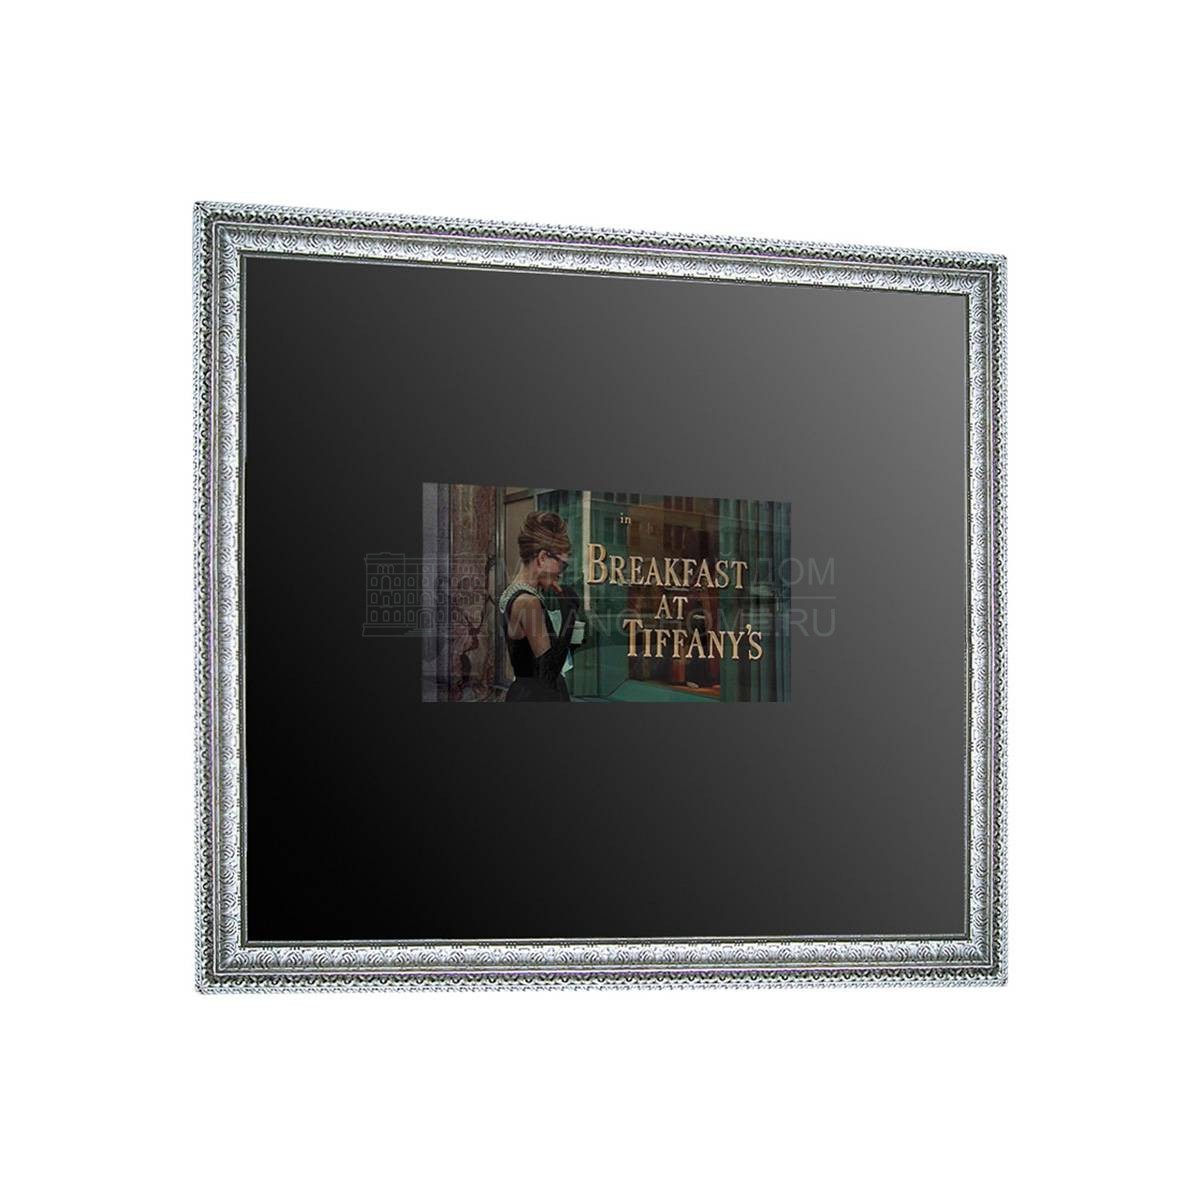 Интерактивное зеркало Goya/S1880 из Испании фабрики COLECCION ALEXANDRA